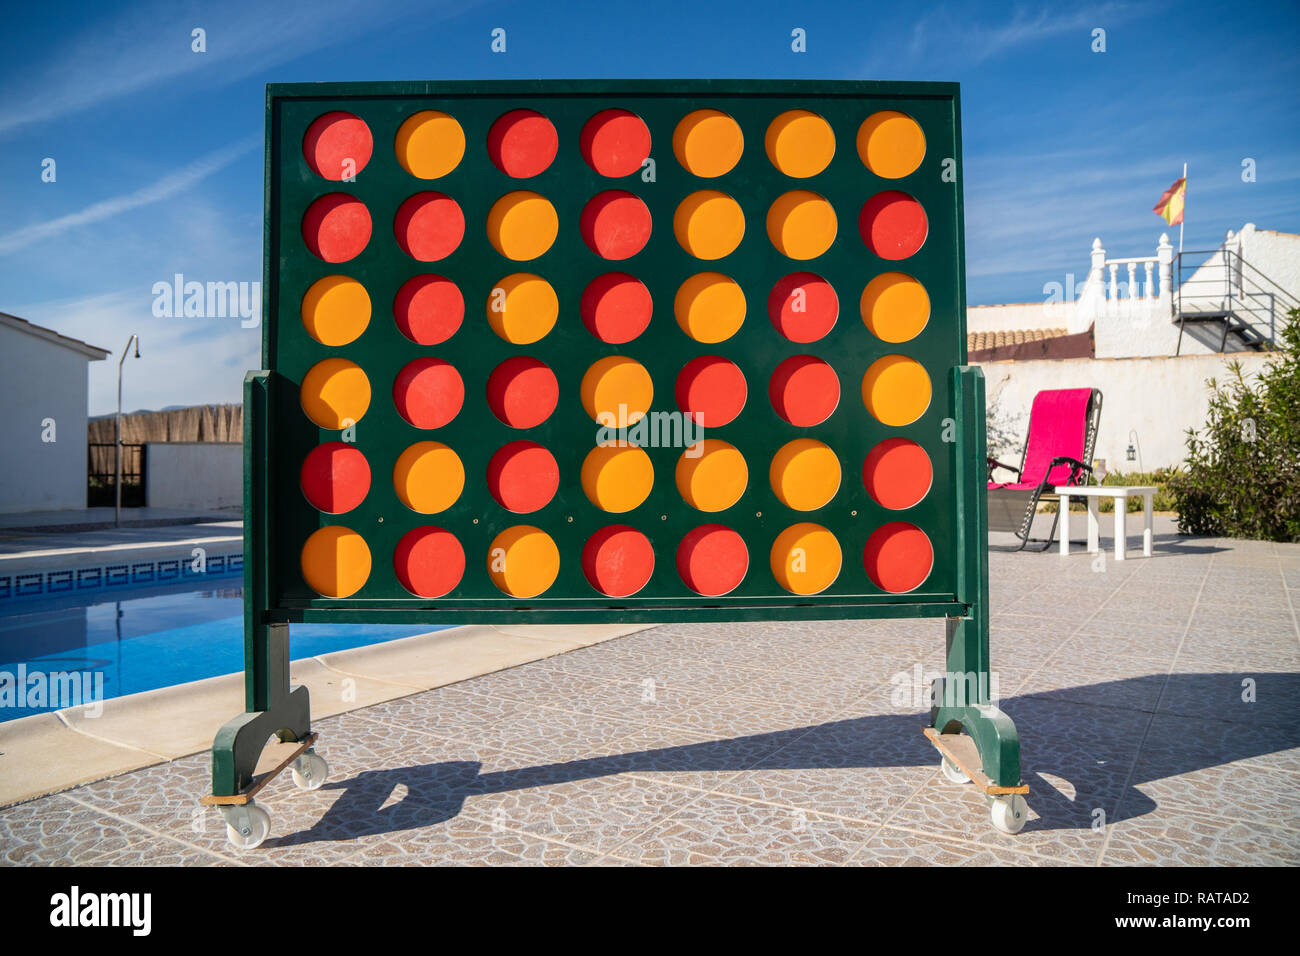 Version du géant puzzle Jeu Connect 4 à côté d'une piscine en Espagne Banque D'Images